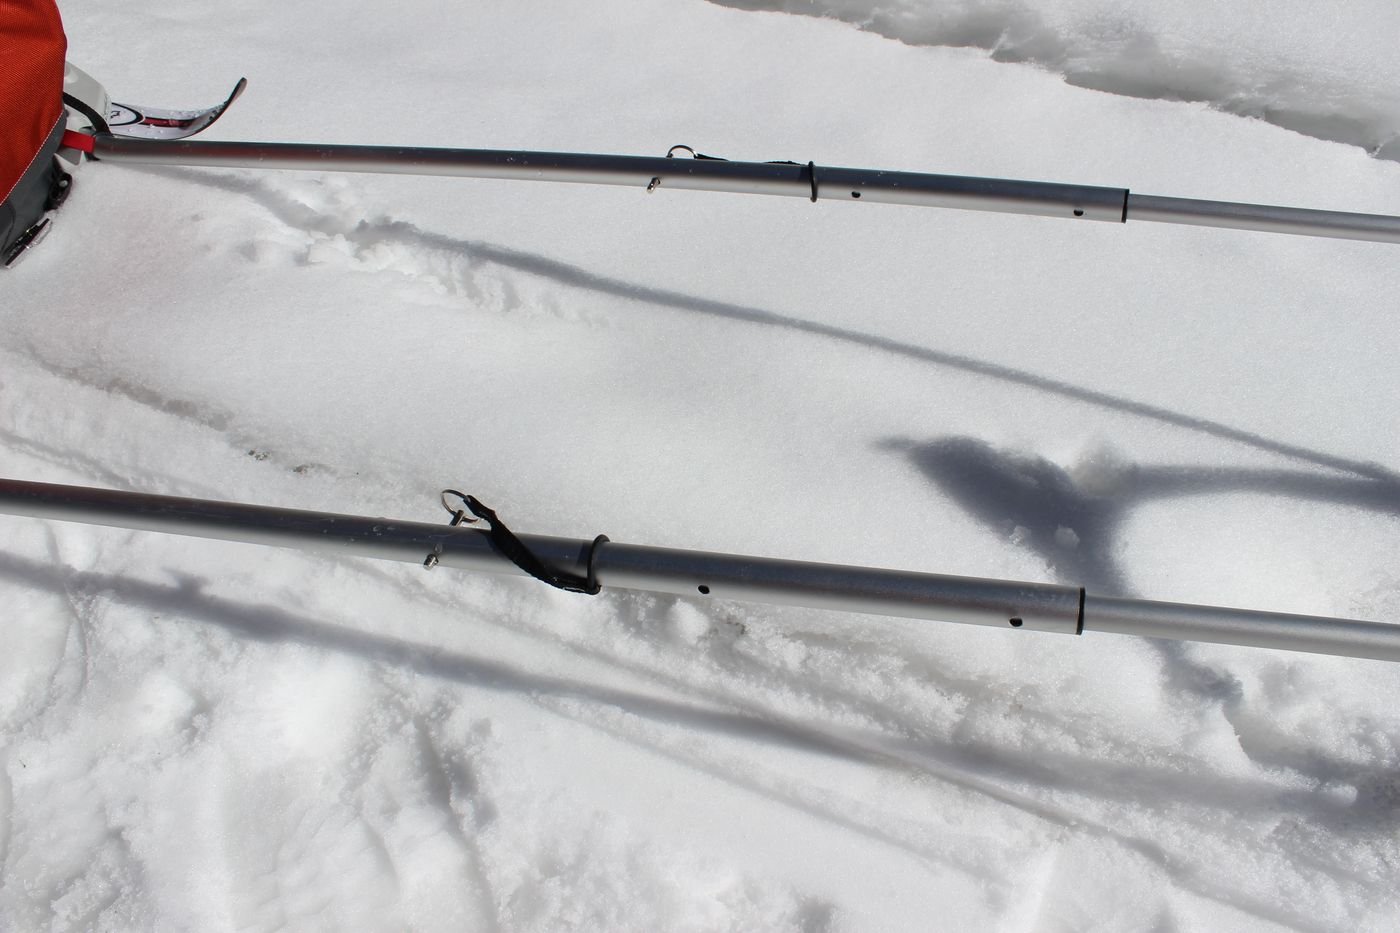 Les brancards sont télescopiques. Cela permet surtout d’ajuster le tangage en fonction de la stature du skieur qui tracte.